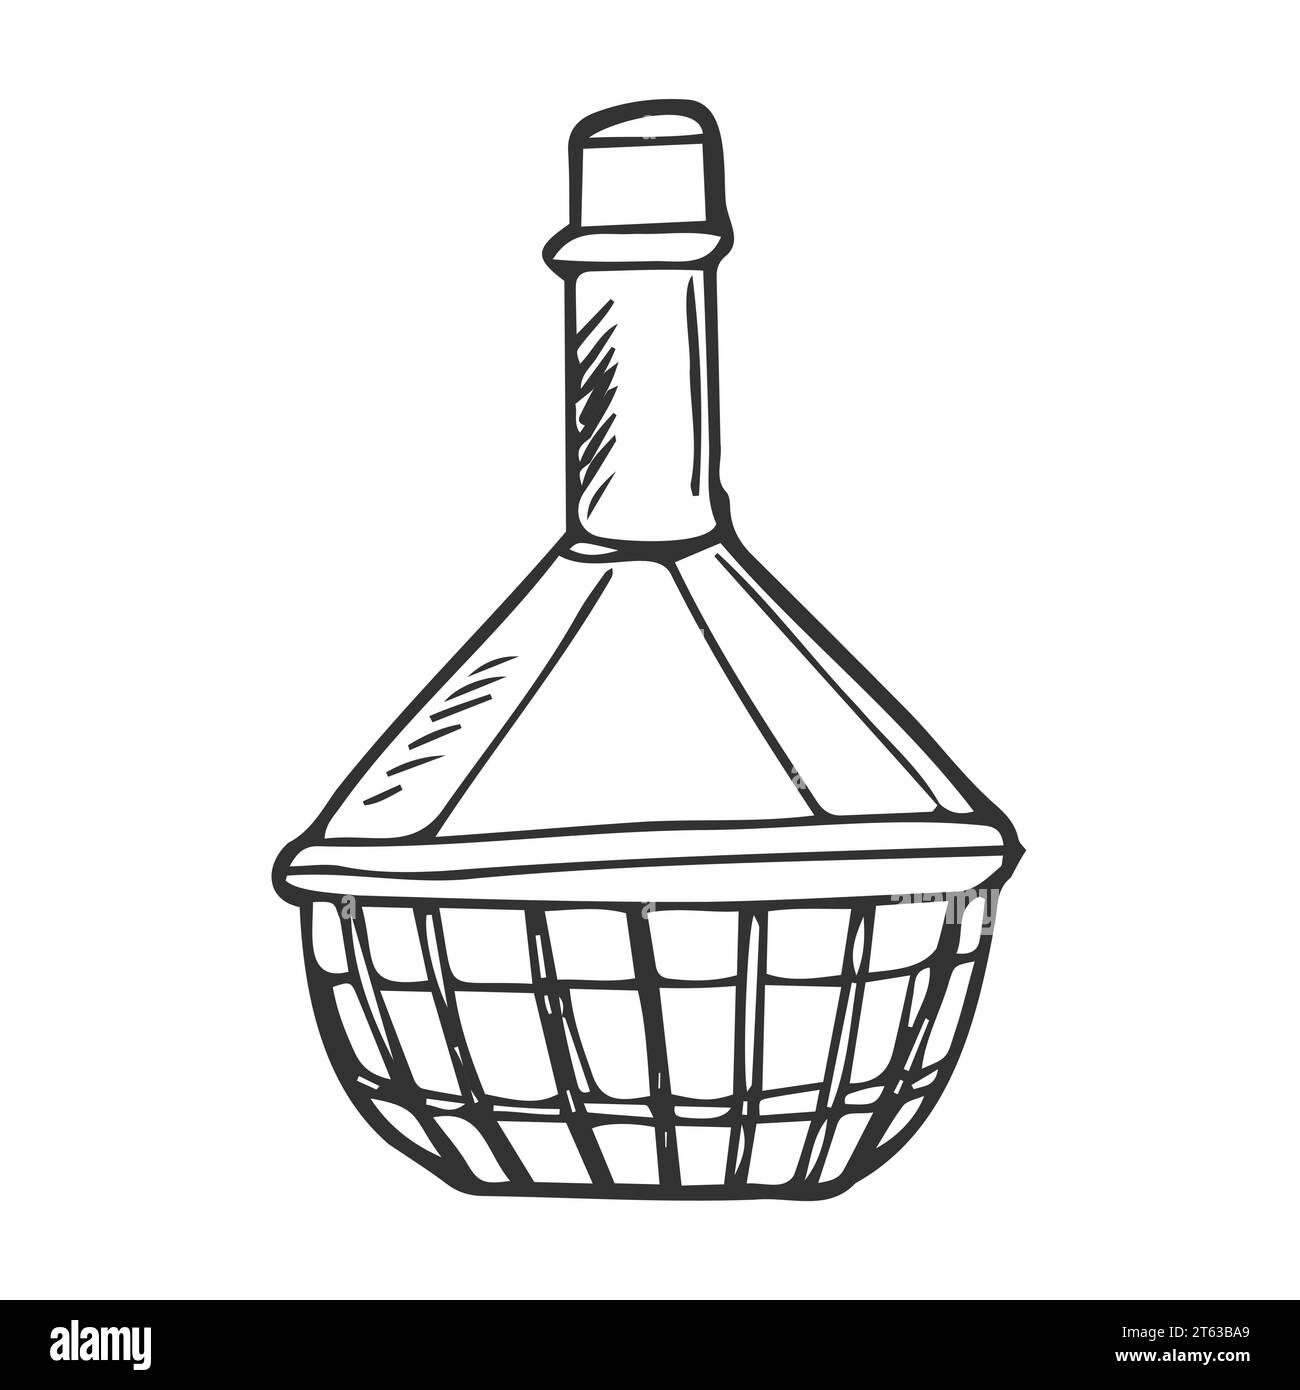 Croquis bouteille de vin . bouteille de vin, croquis vectoriel Illustration de Vecteur